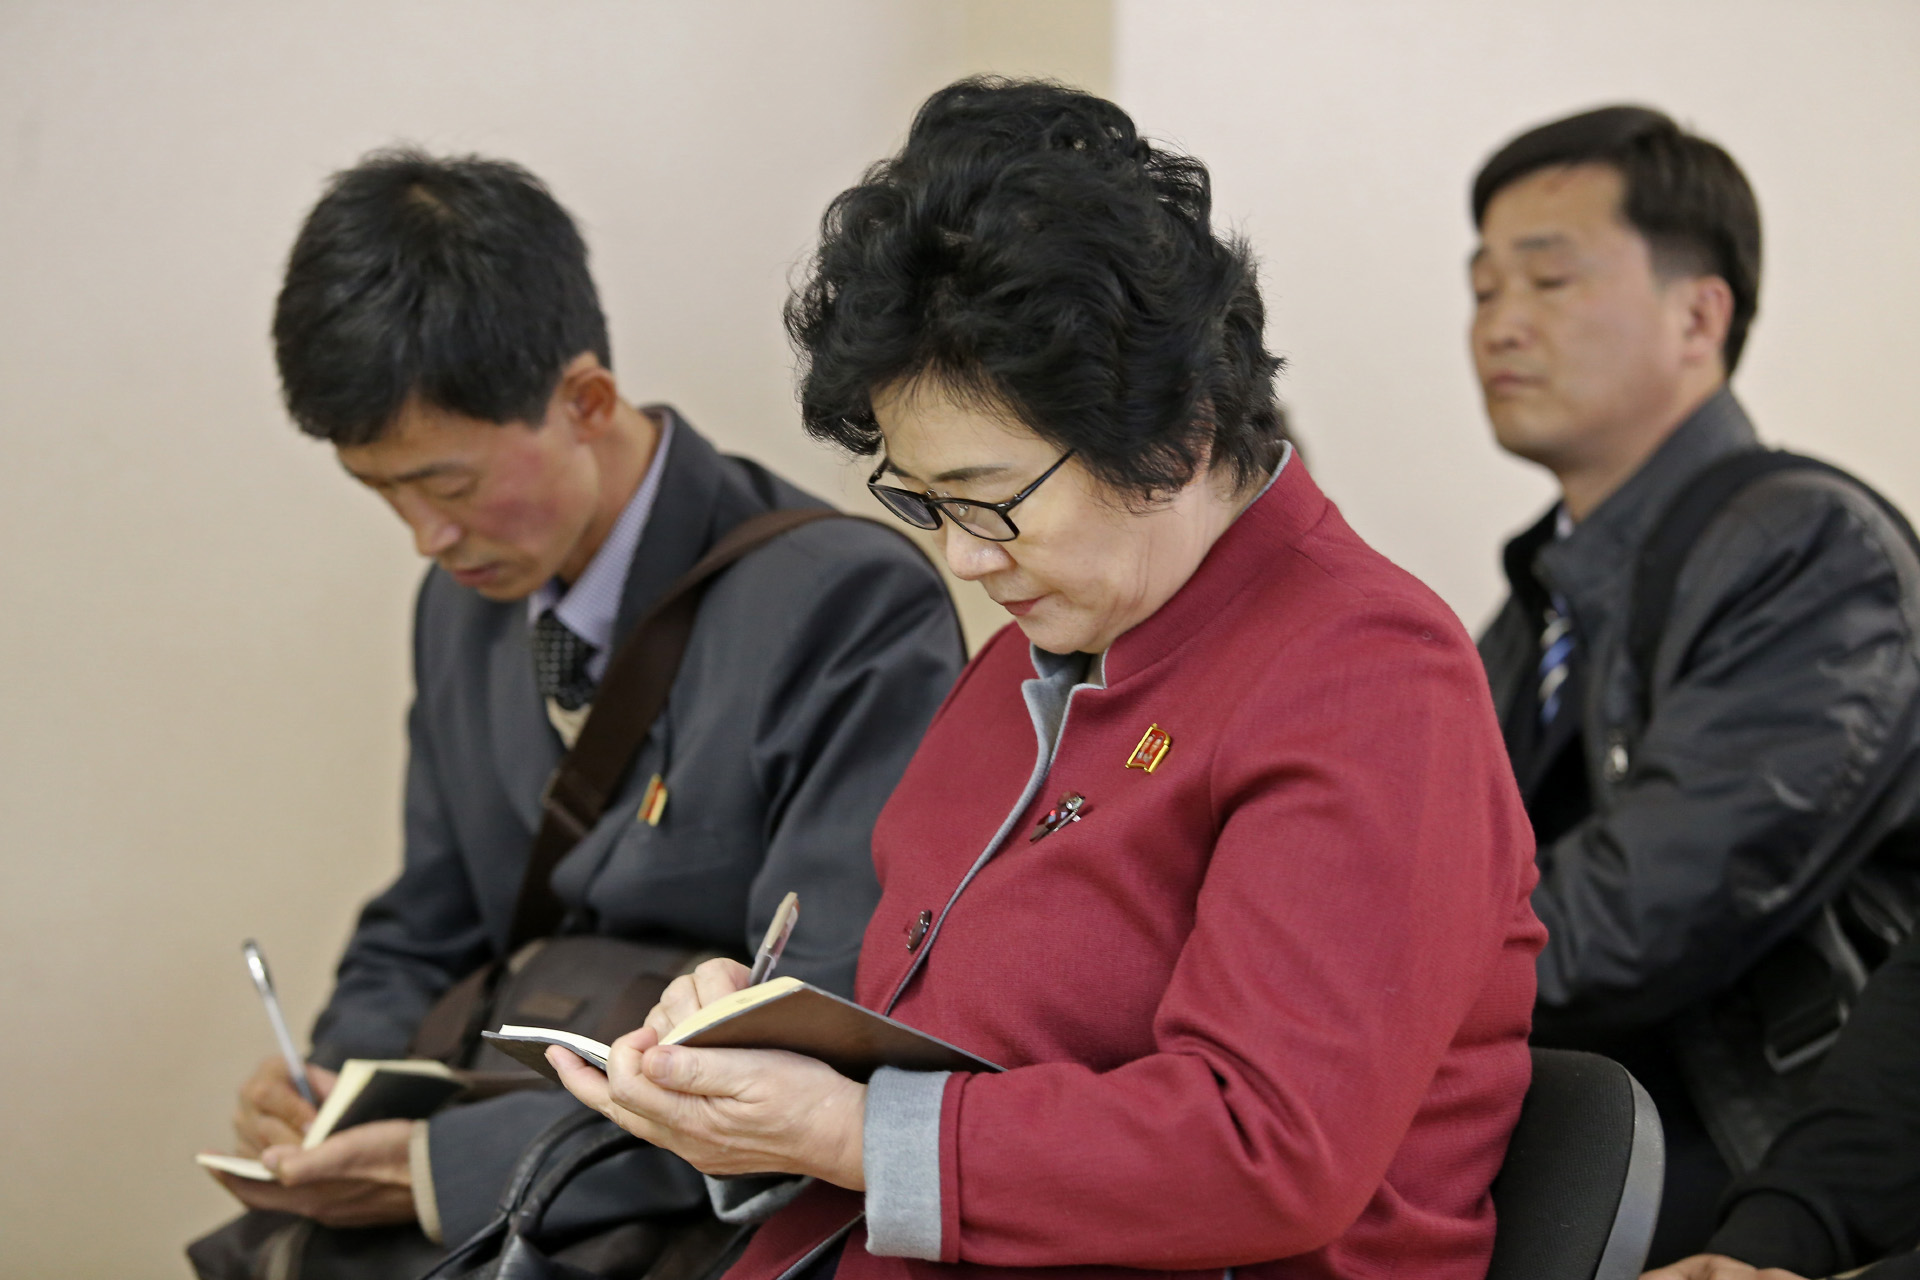 Члены корейской делегации были очень внимательными и постоянно что-то записывали при рассказе о системе образования Челябинской области